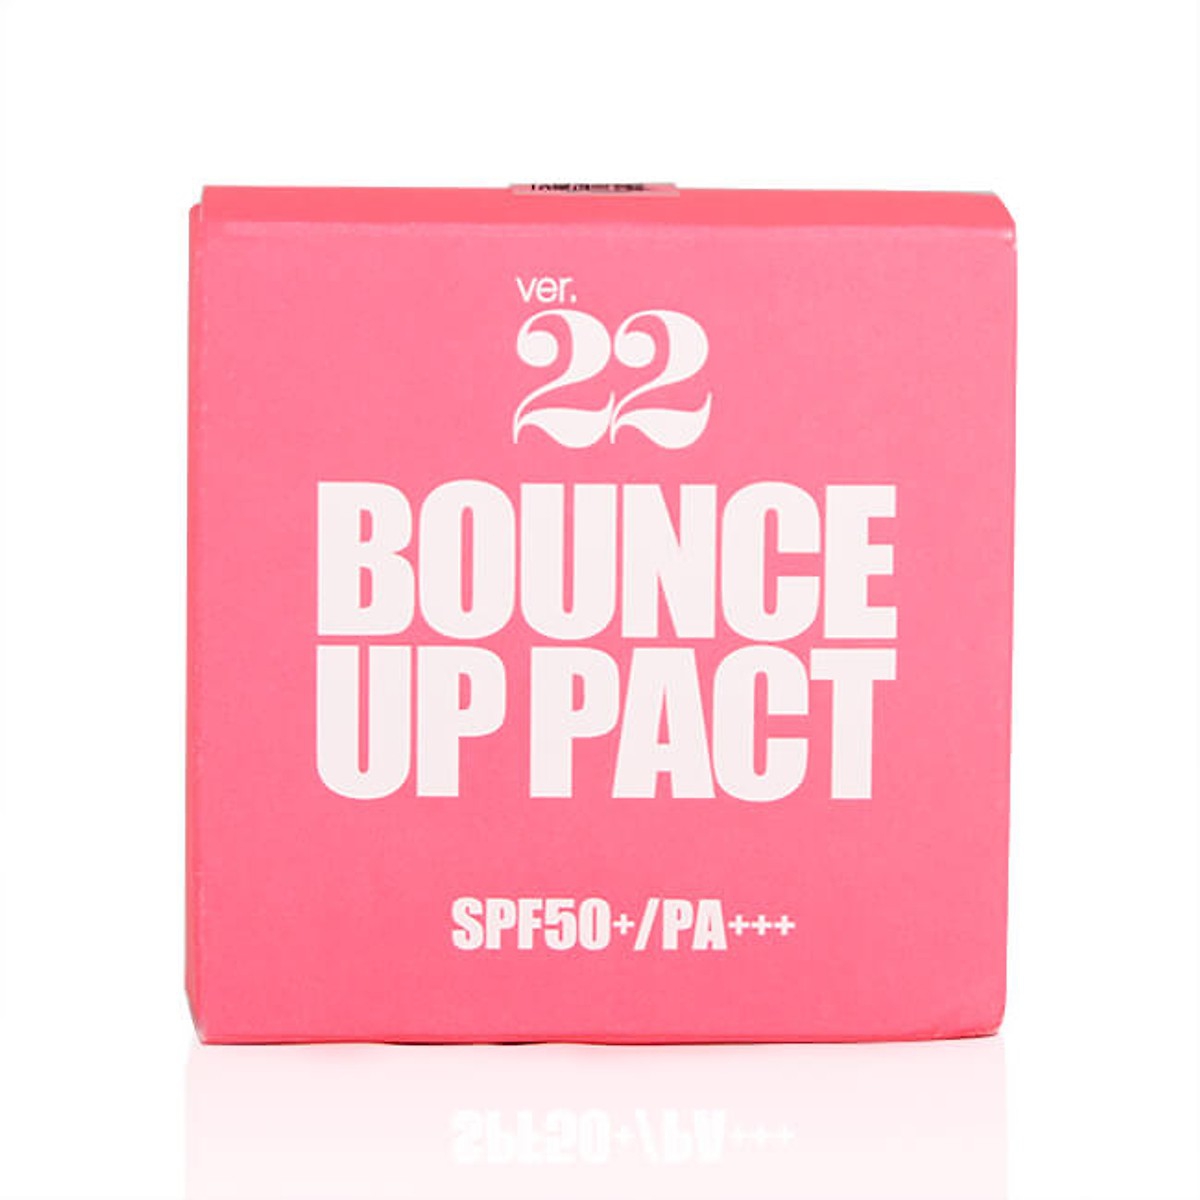 Phấn tươi Ver.22 Bounce Up Pact SPF 50+/PA+++, Hộp 11g